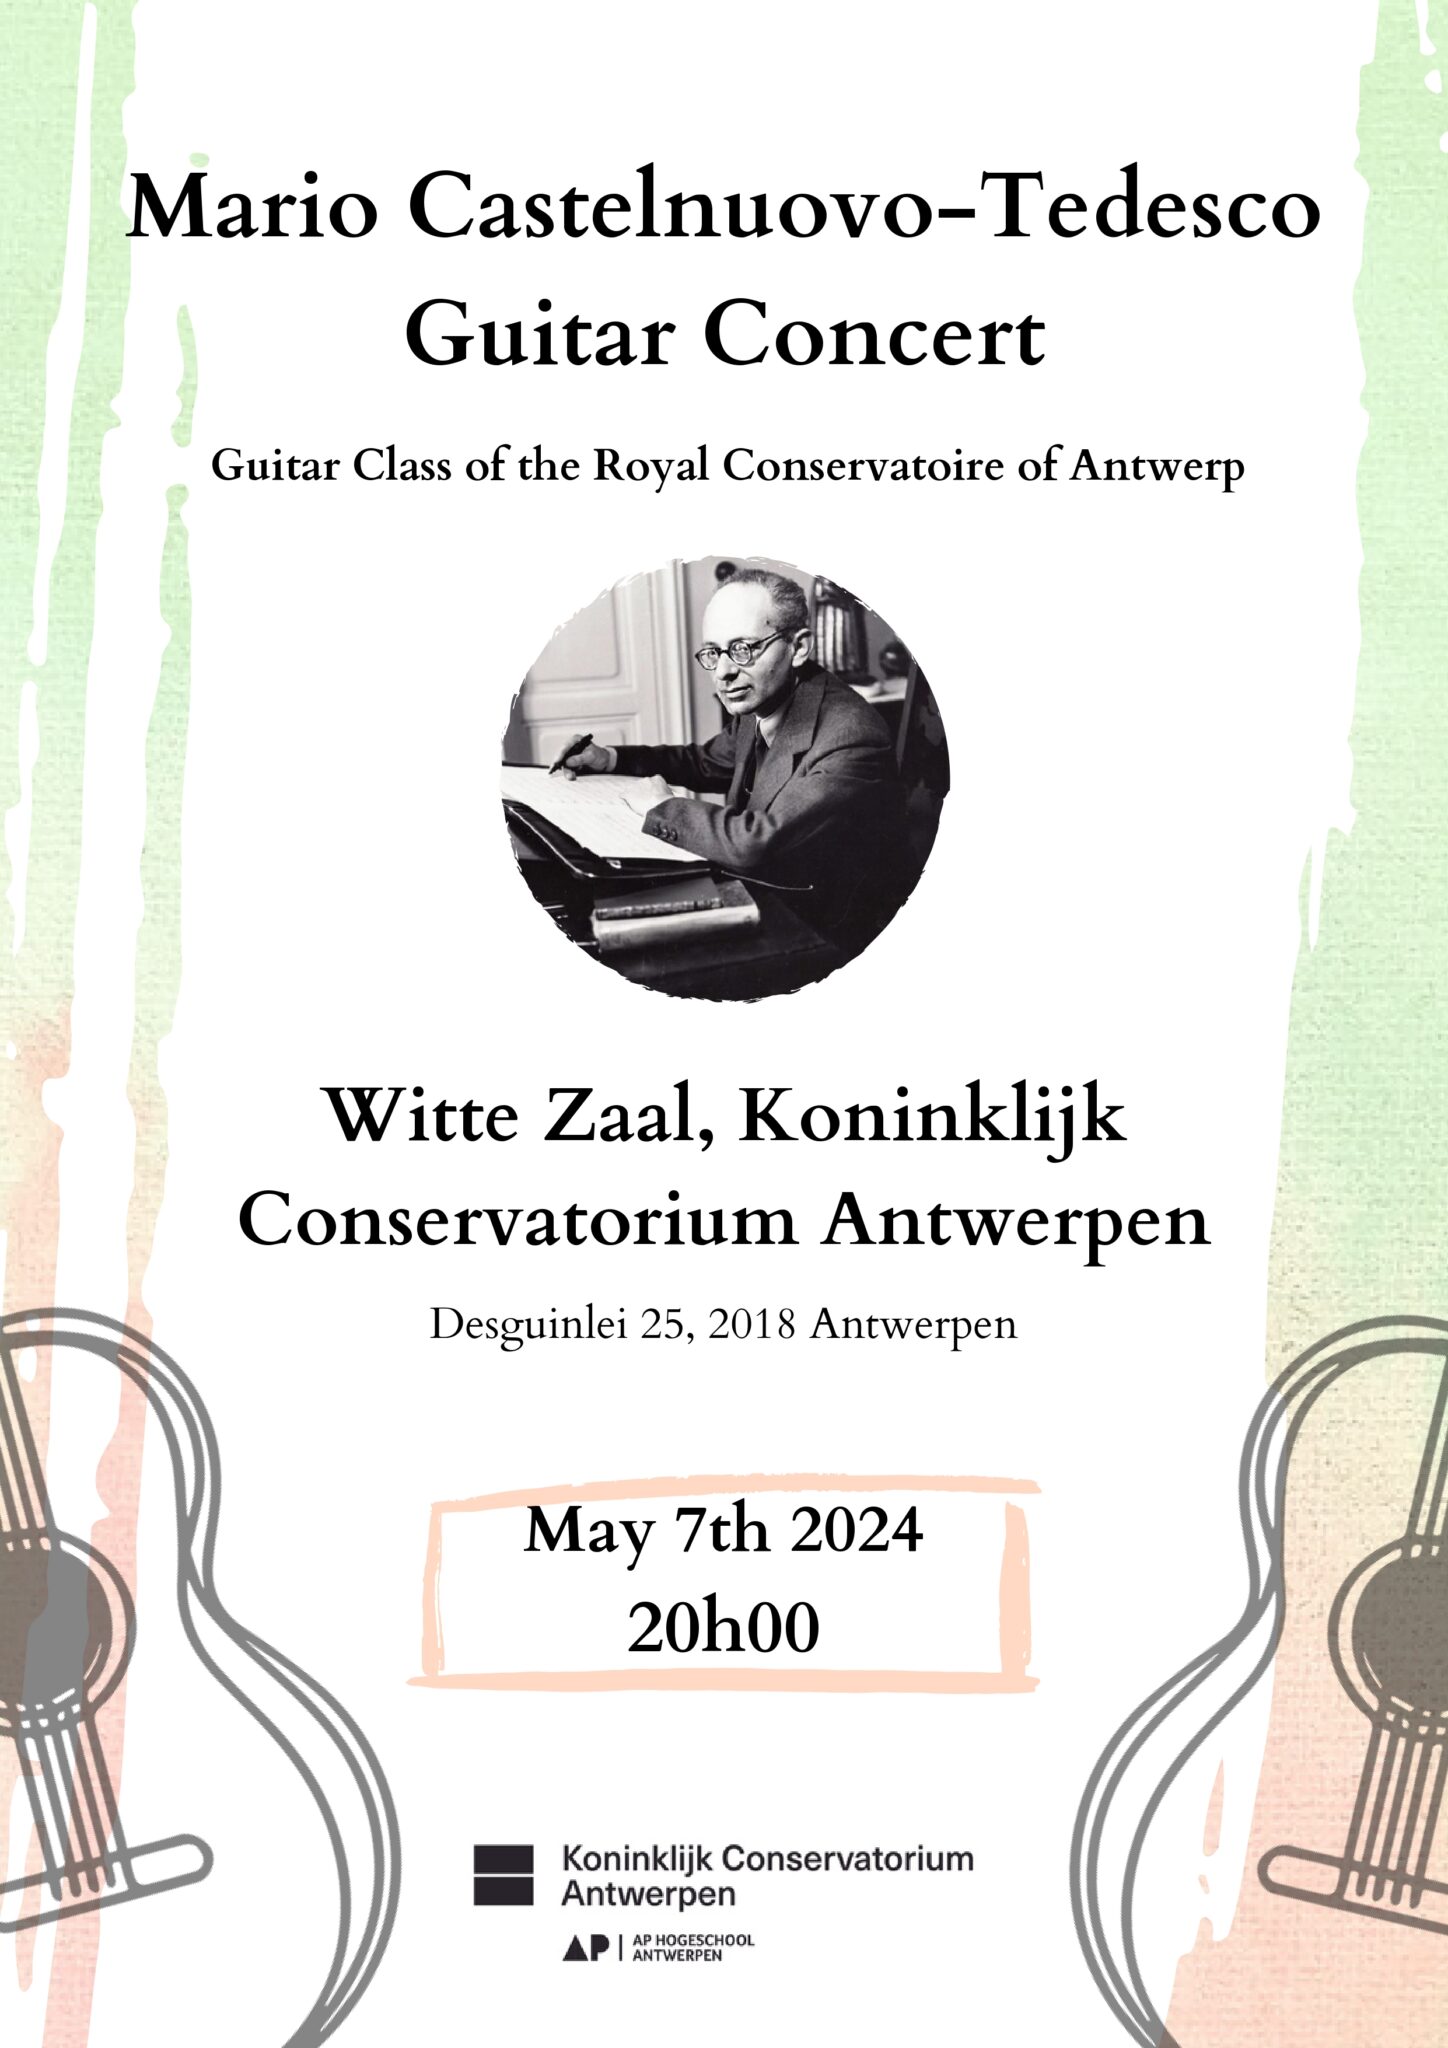 Mario Castelnuovo-Tedesco concert @ deSingel Witte Zaal | Antwerpen | Vlaams Gewest | België